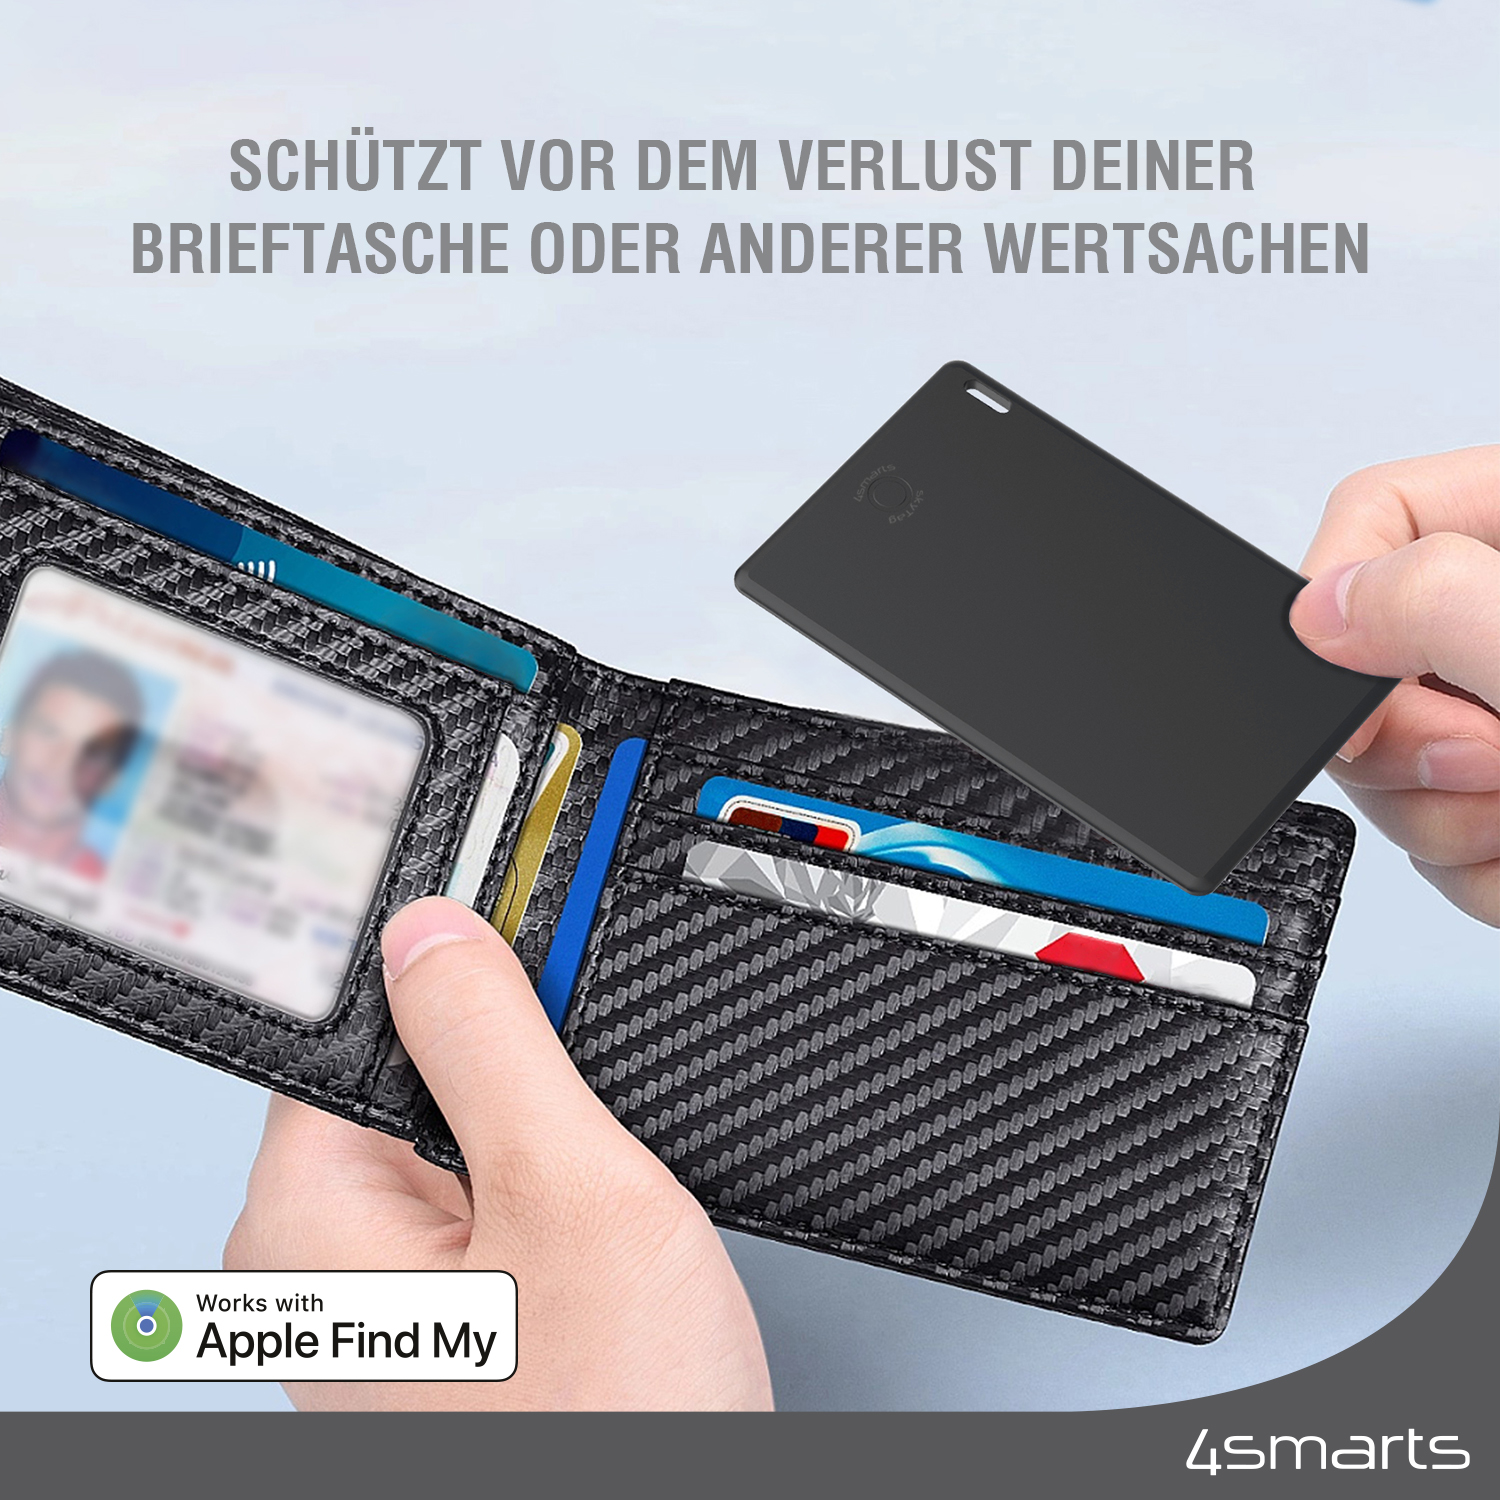 Das 4smarts SkyTag Wallet ist die preiswerte Alternative zum Apple AirTag zum Schutz deiner Wertsachen vor Verlust.